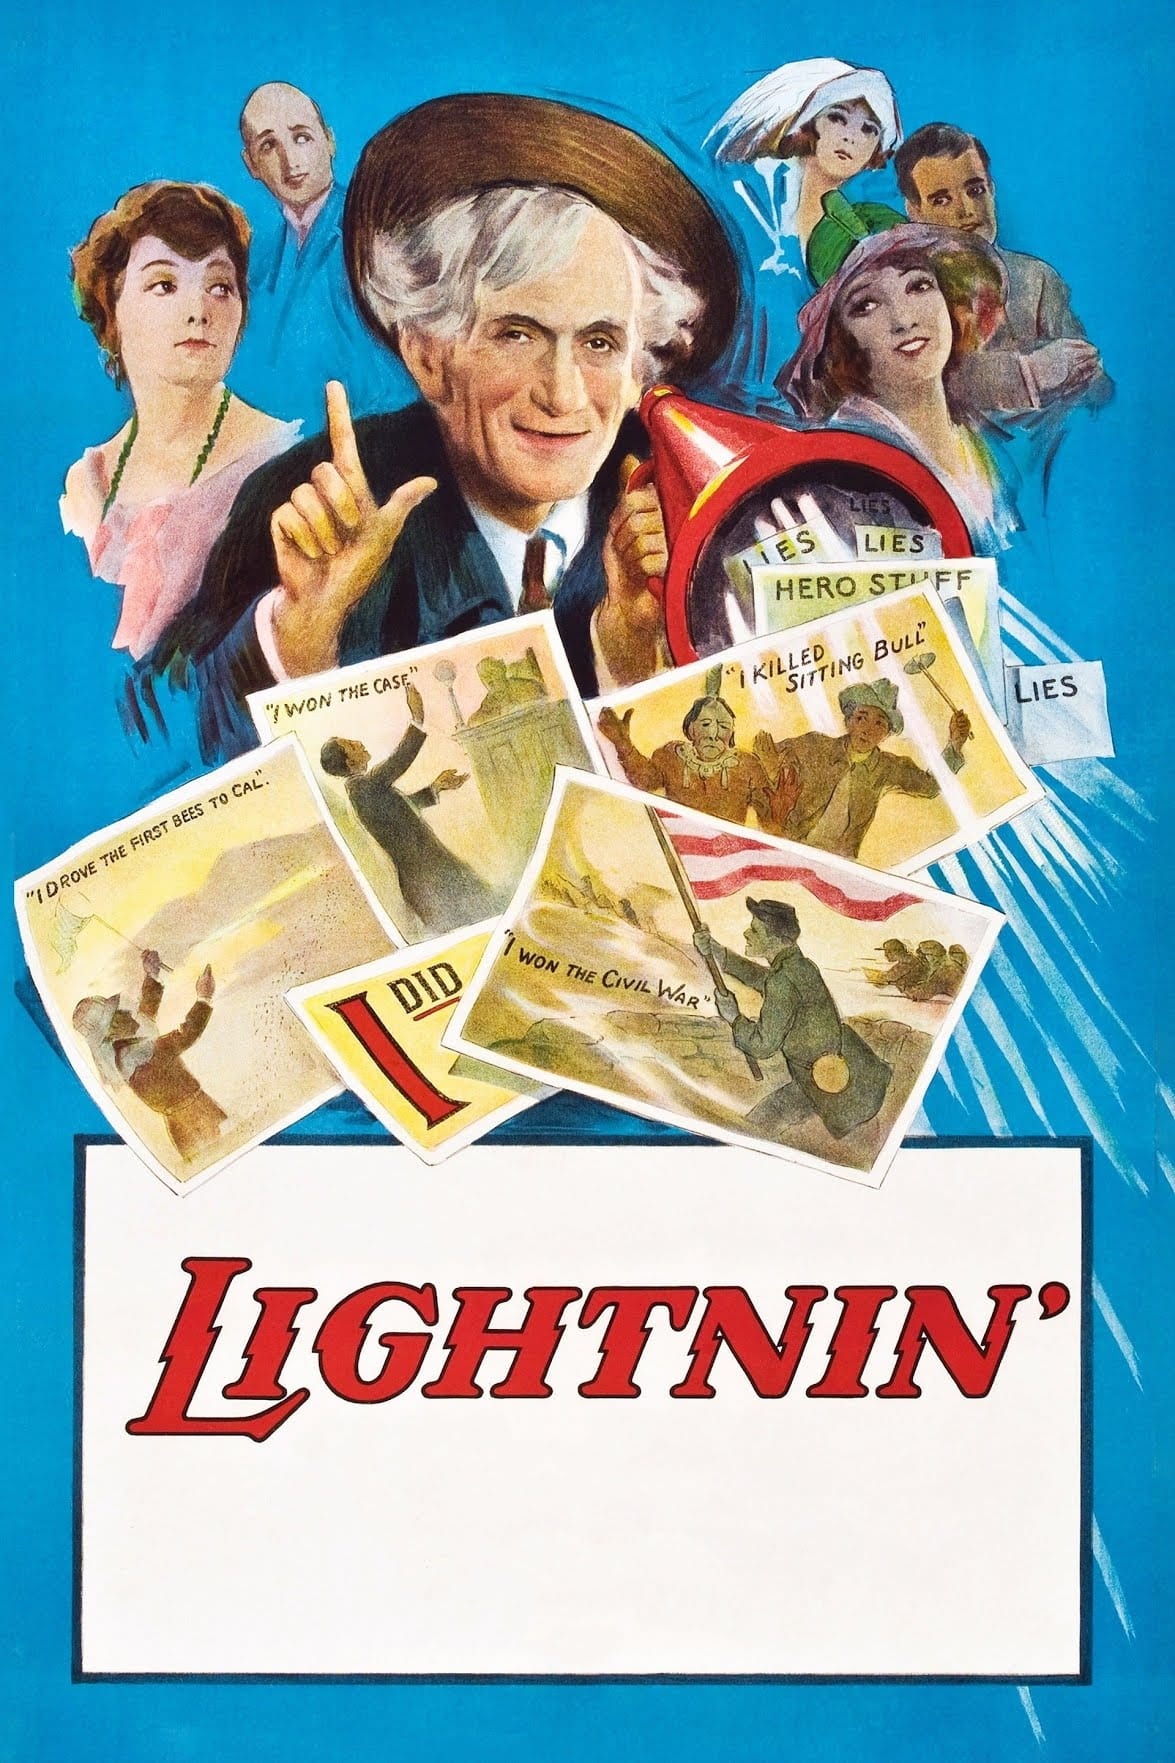 Lightnin' film